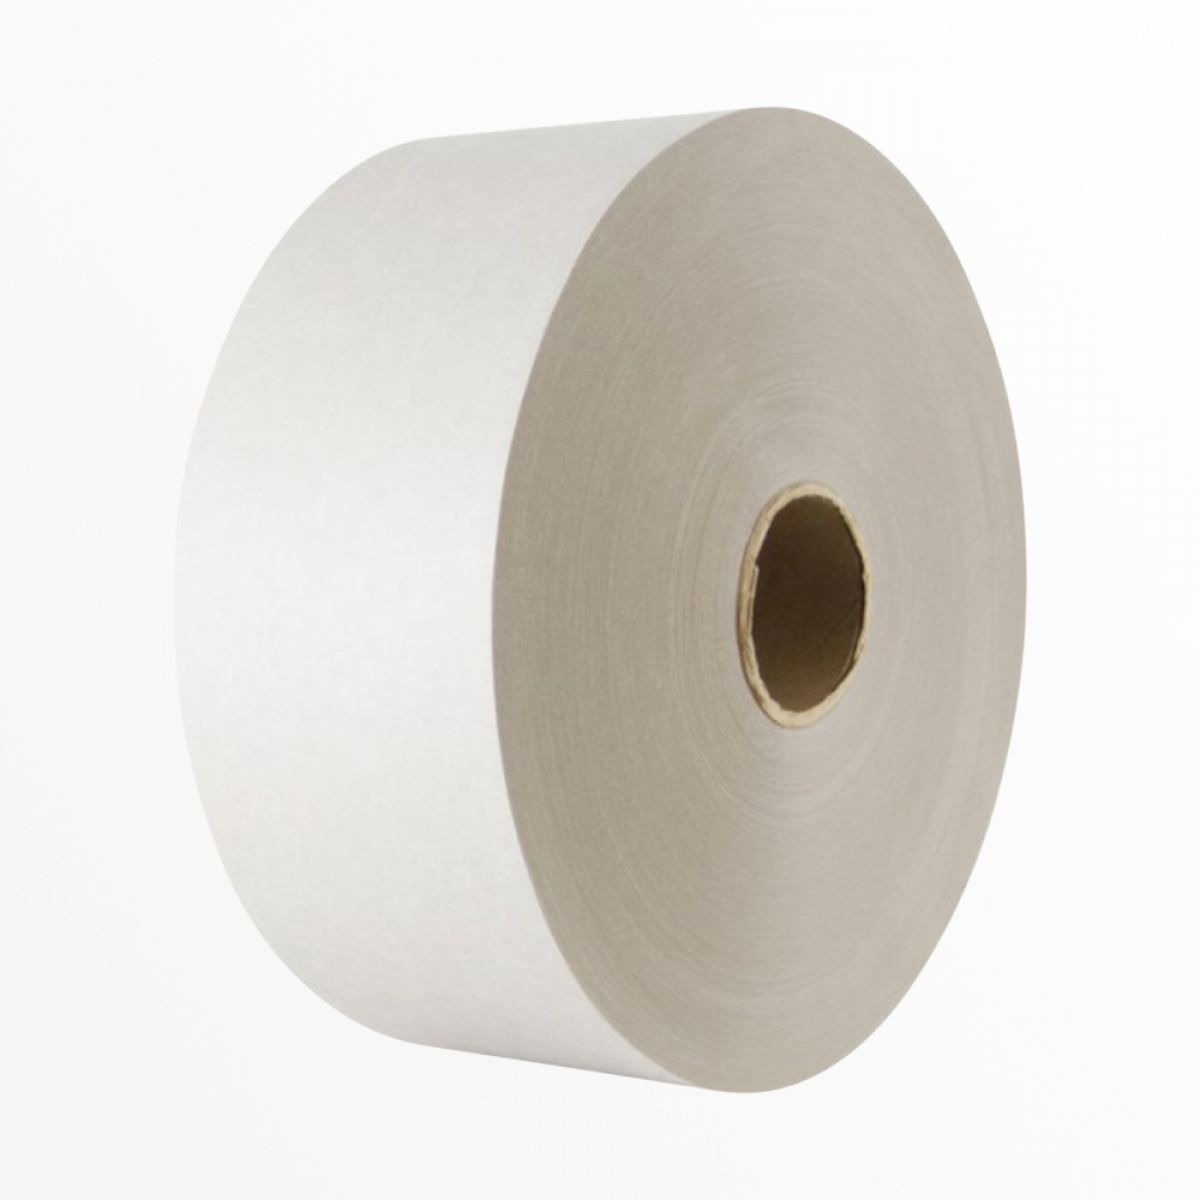 Biela papierová lepiaca páska s vodou-aktivovateľným lepidlom